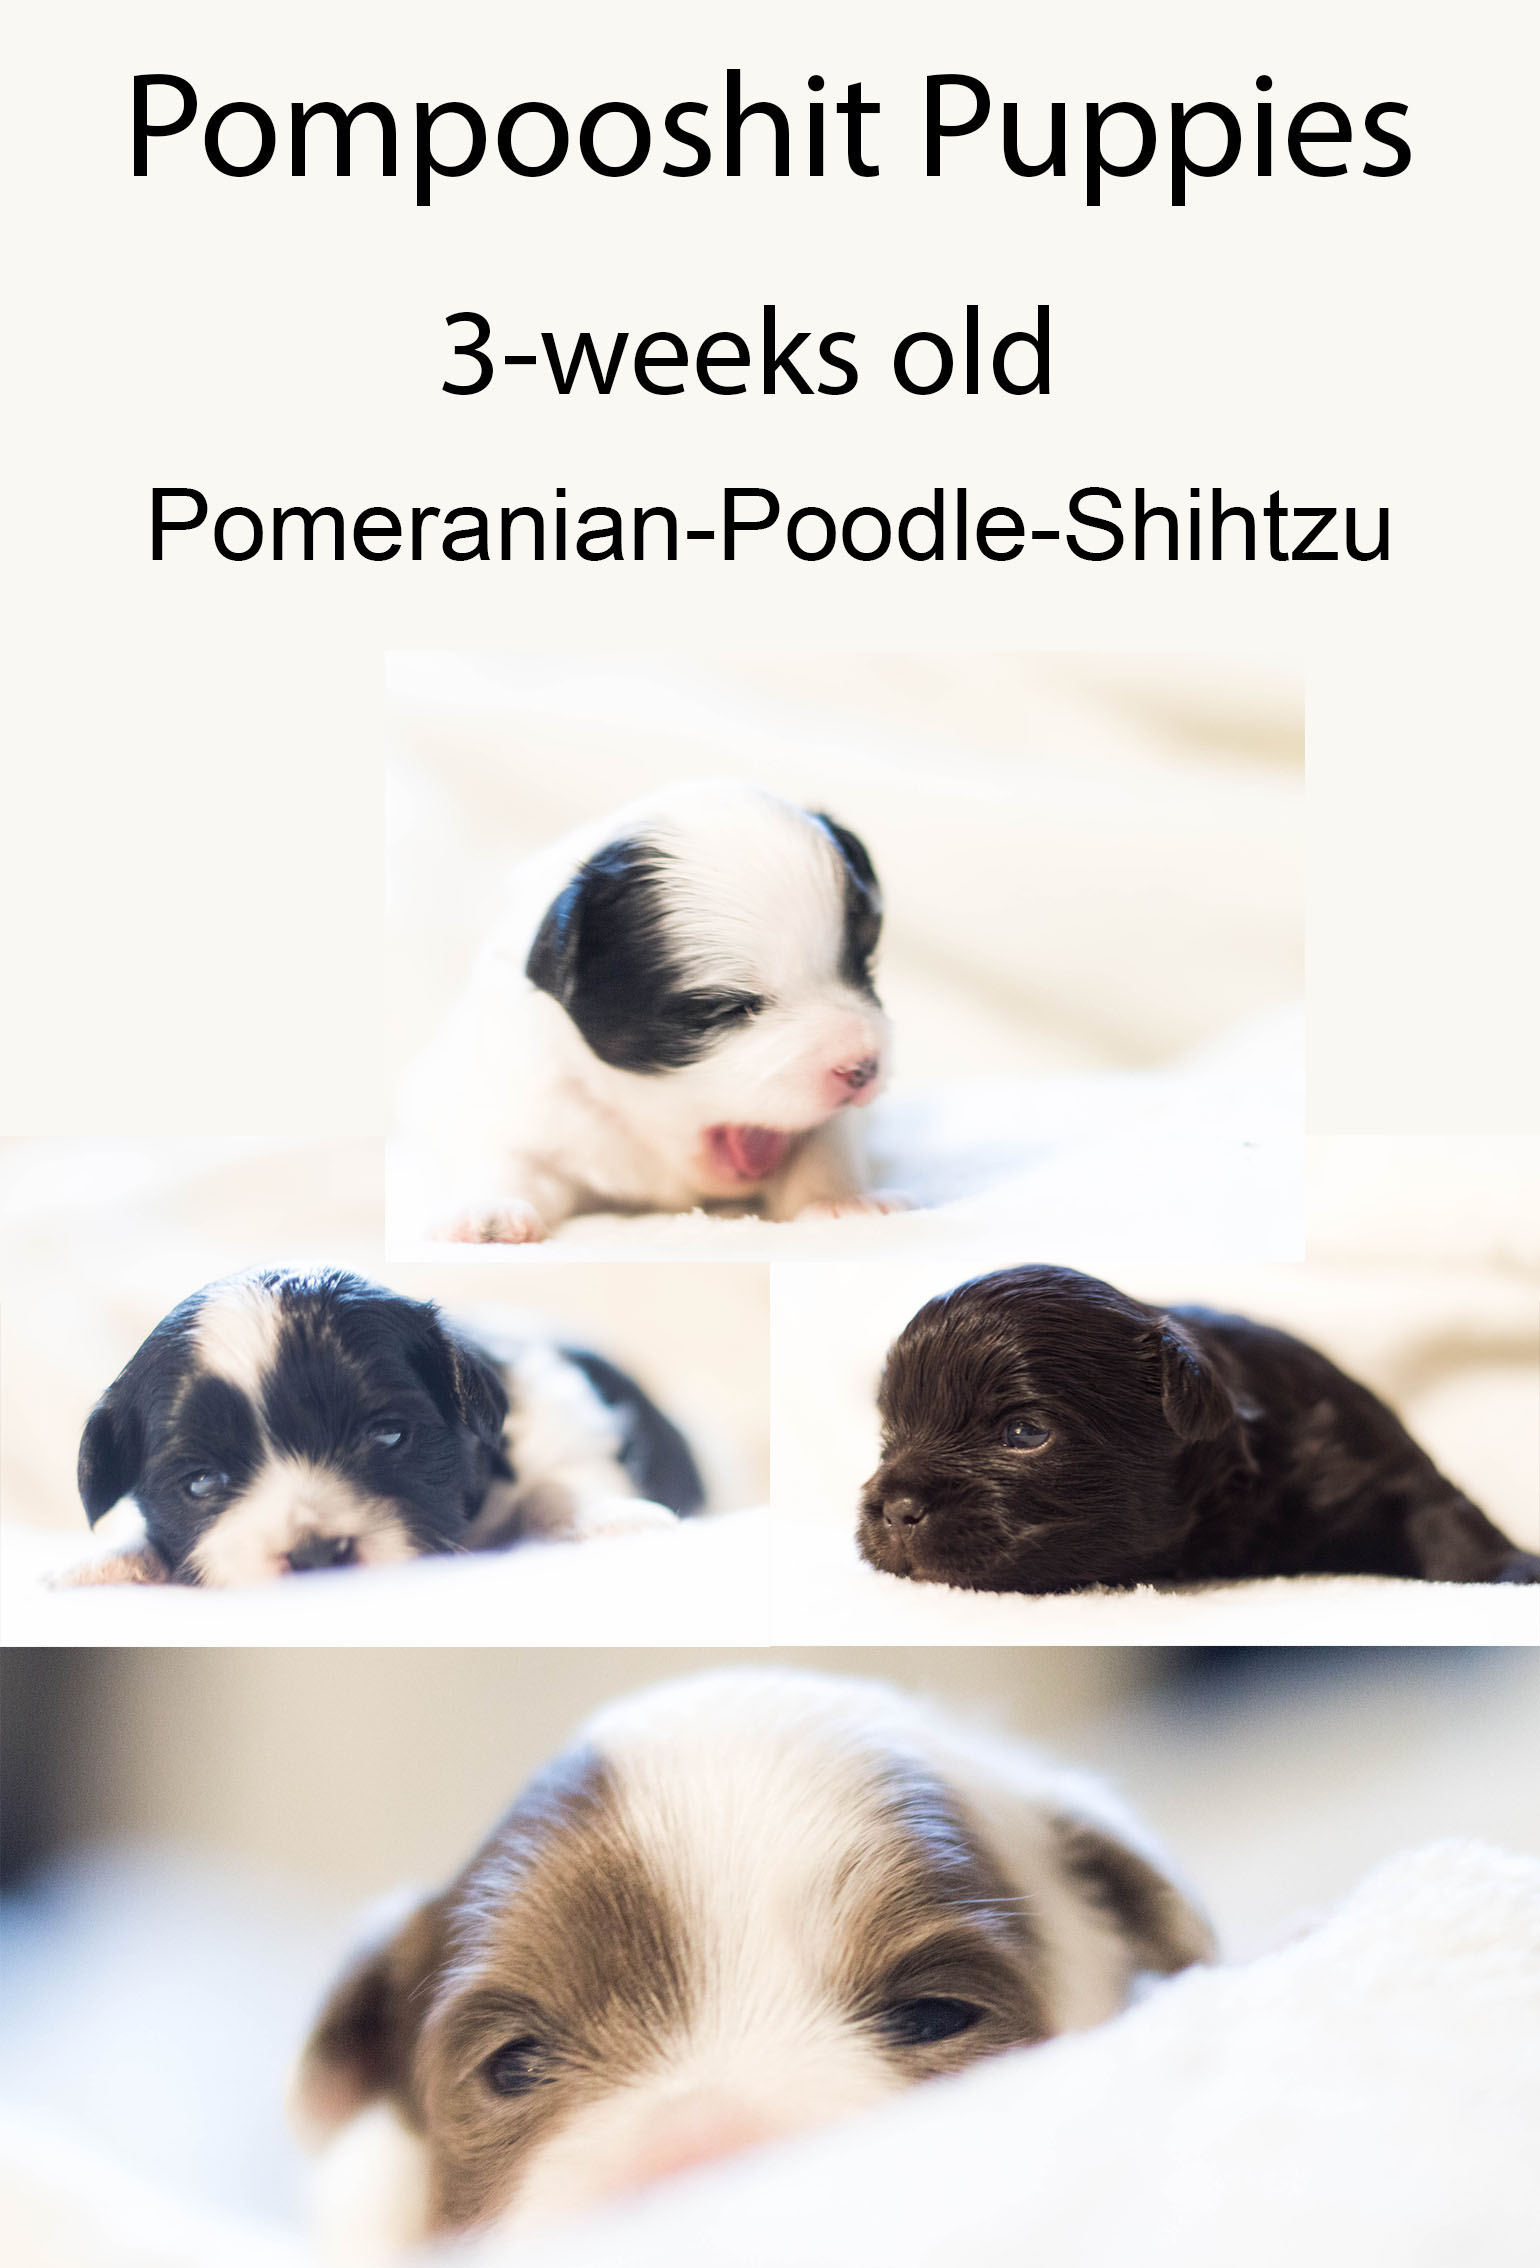 Pompooshits - Pompoodle and Shihtzu